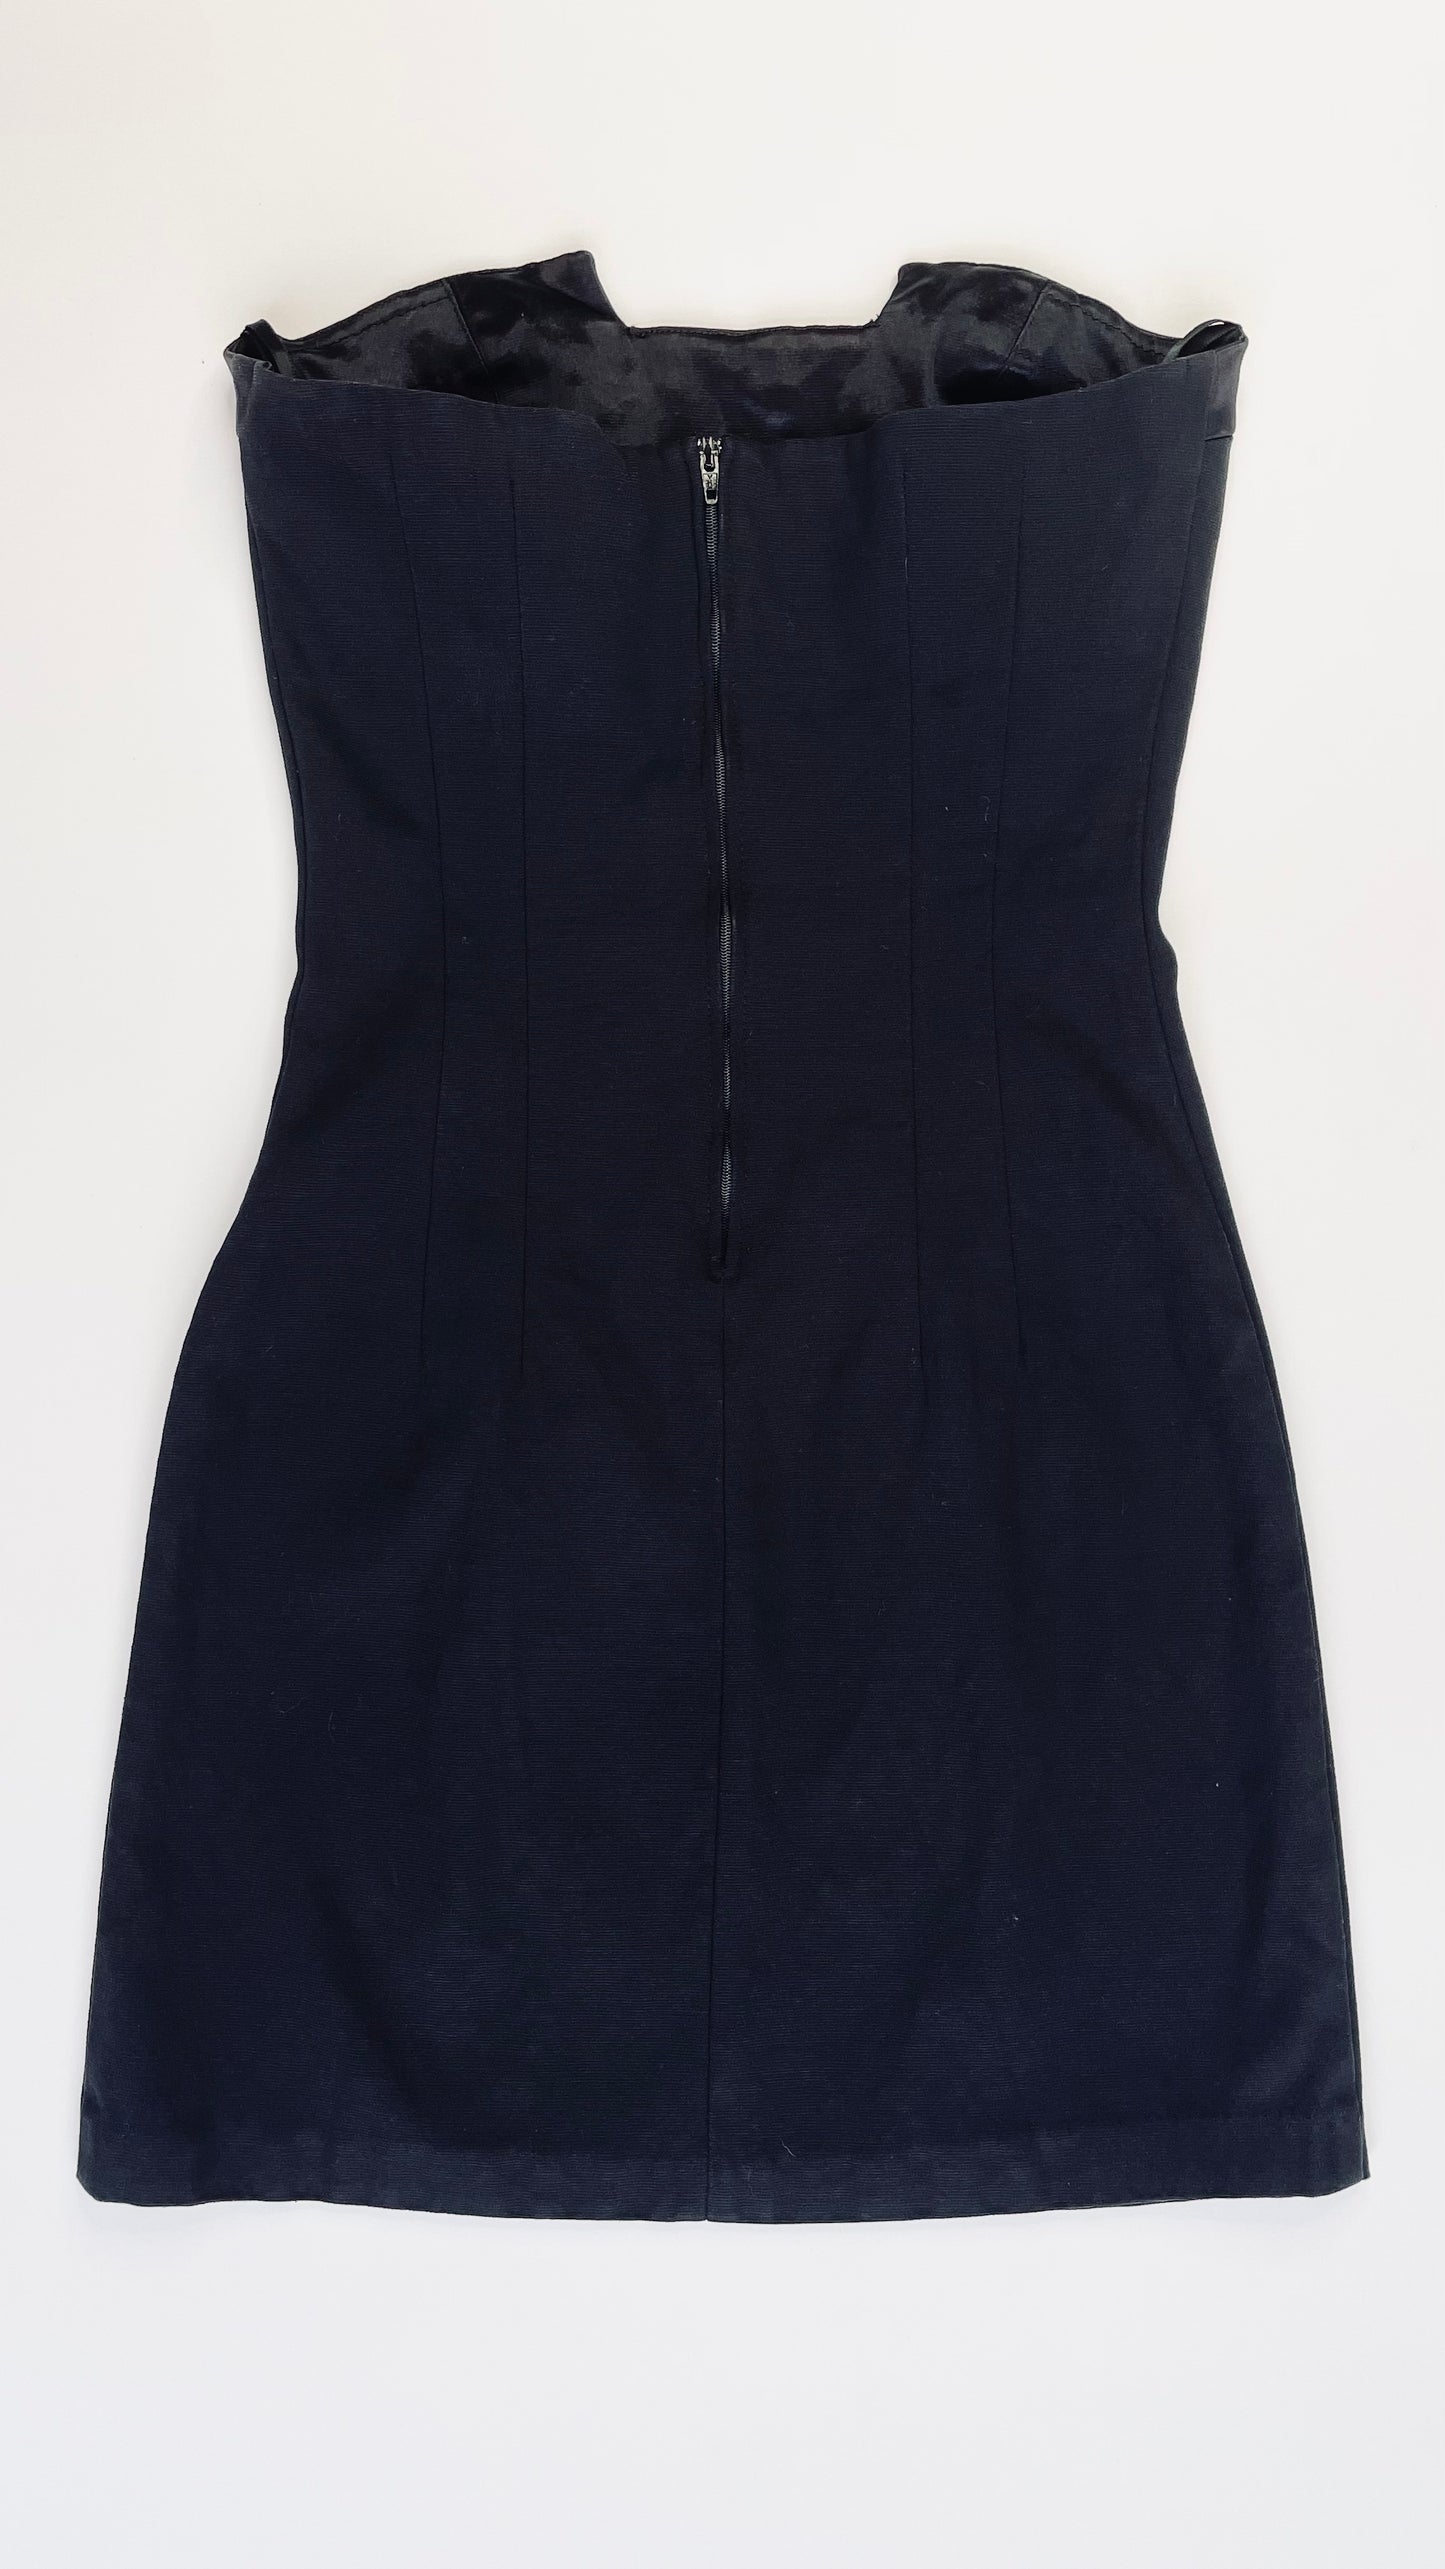 90s Cache black strapless mini dress - Size S